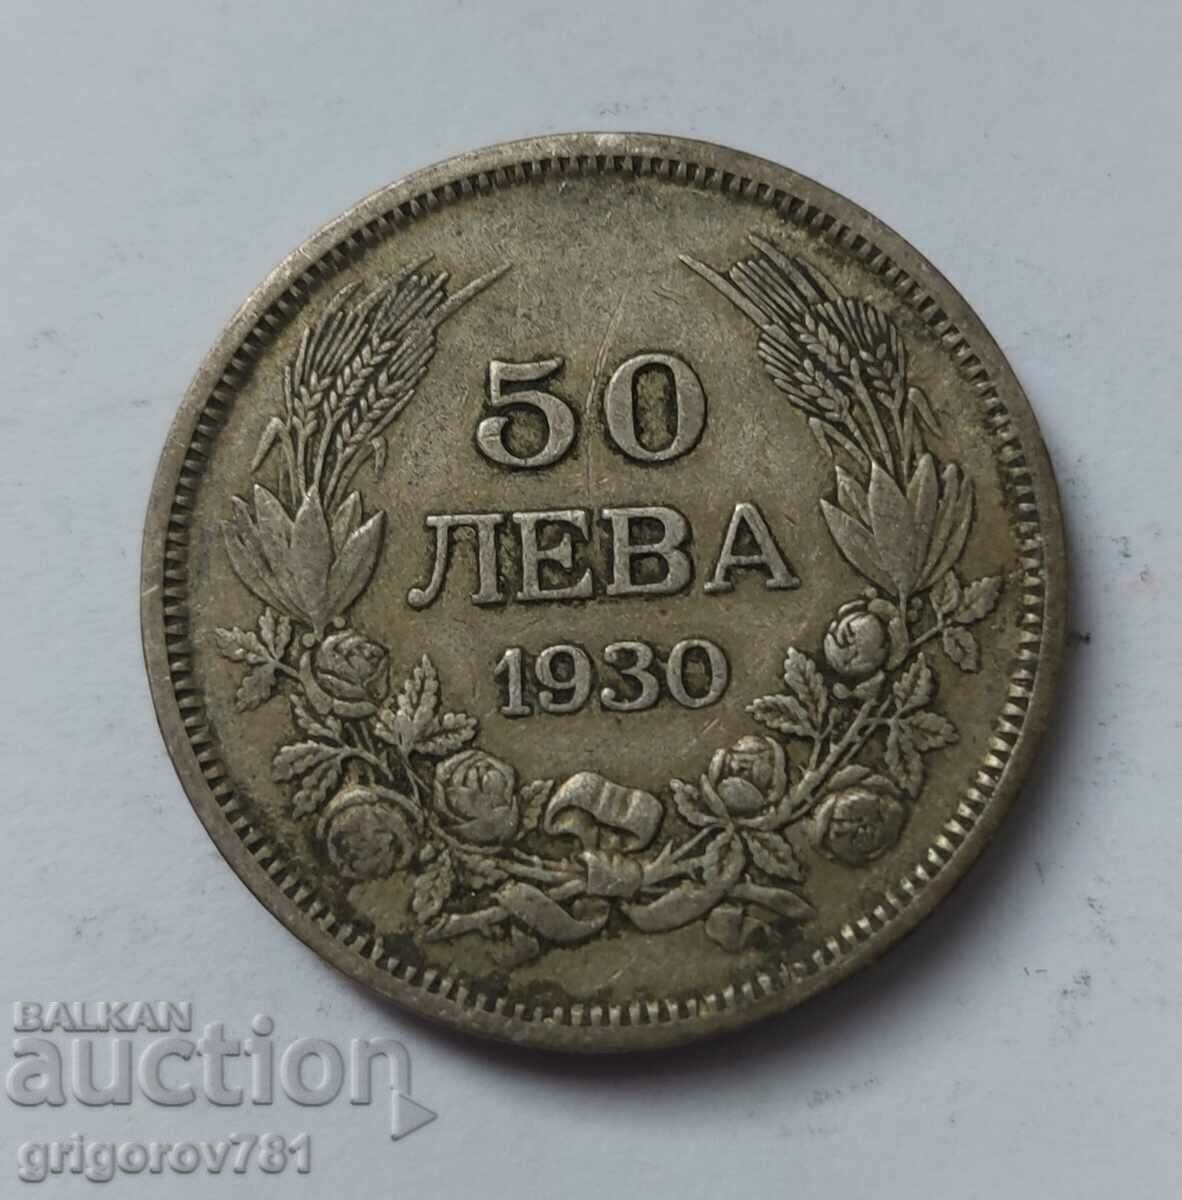 Ασήμι 50 λέβα Βουλγαρία 1930 - ασημένιο νόμισμα #52